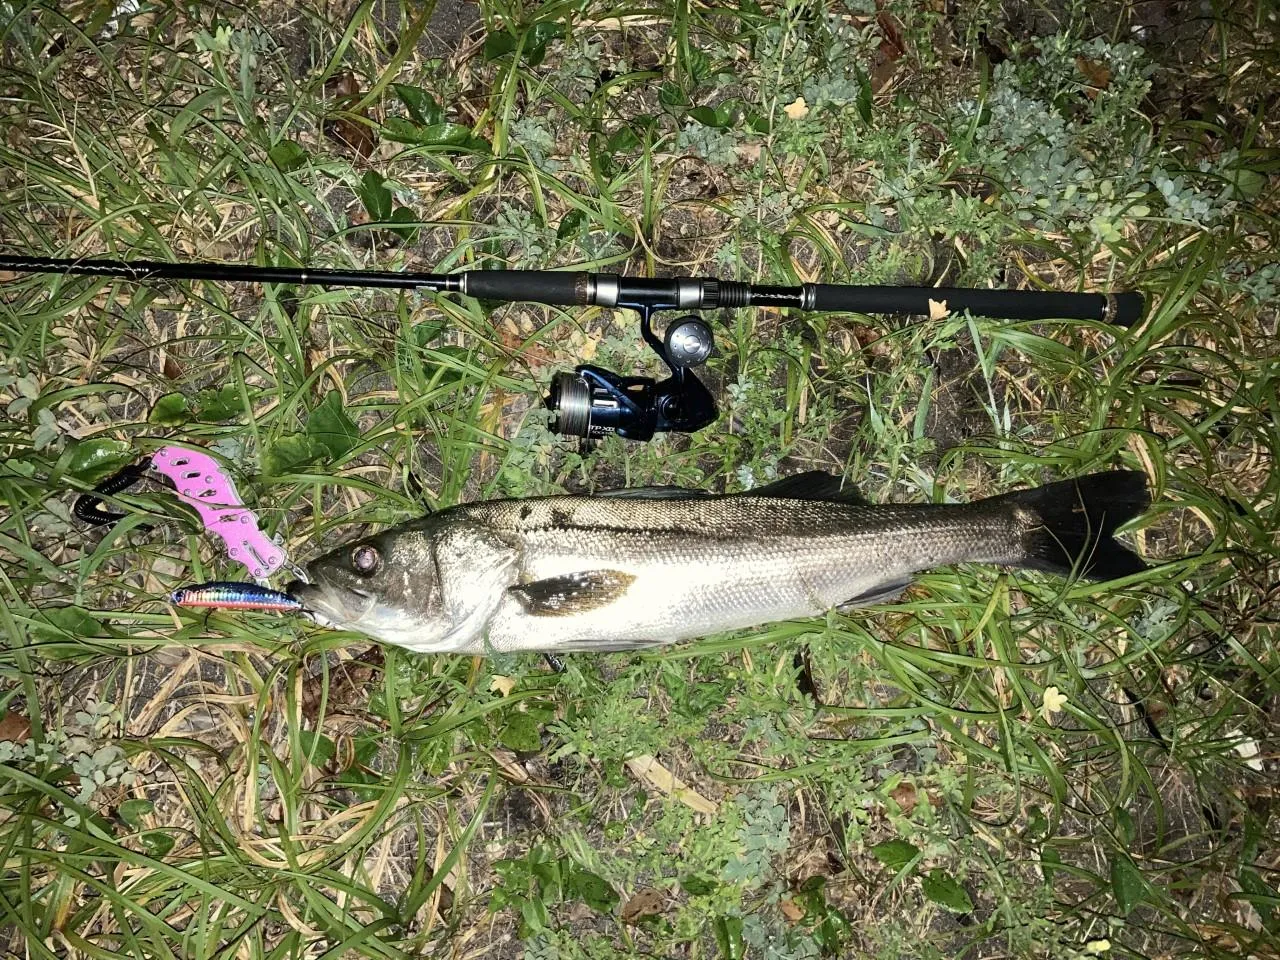 コノシロパターン 狩野川河口で良型シーバスゲット 沼津釣果情報 釣具のイシグロ 釣り情報サイト